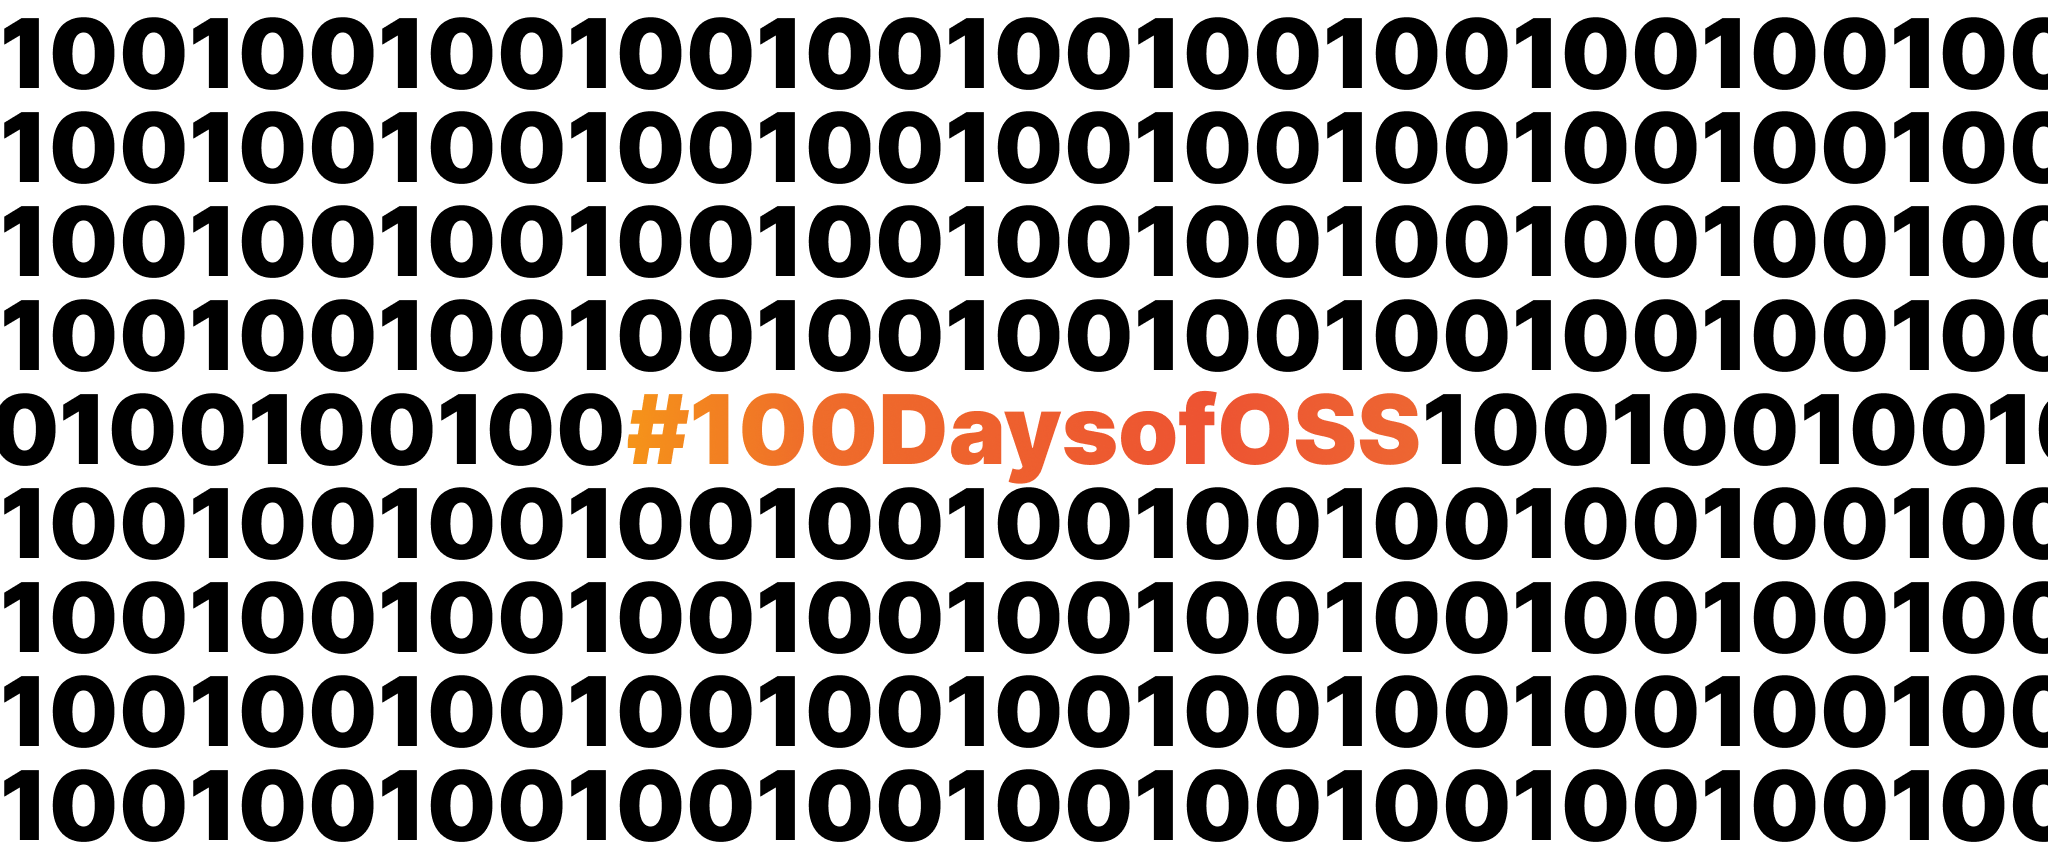 Day 50 | #100DaysofOSS